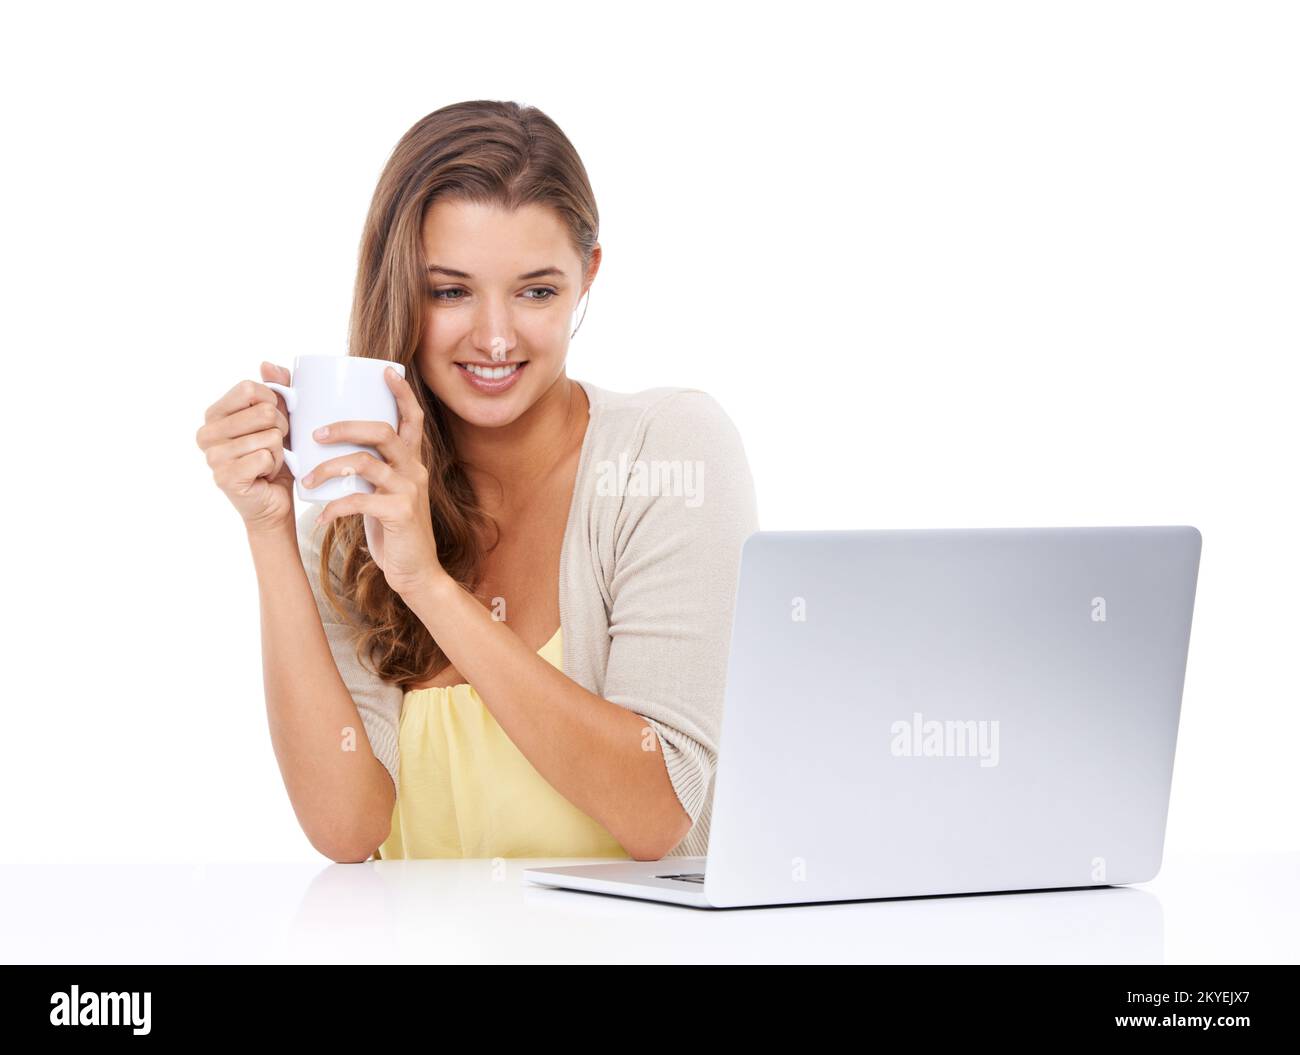 Optimale Nutzung der Technologie. Studioaufnahme einer attraktiven jungen Frau, die Kaffee trinkt und auf ihren Laptop-Bildschirm schaut. Stockfoto